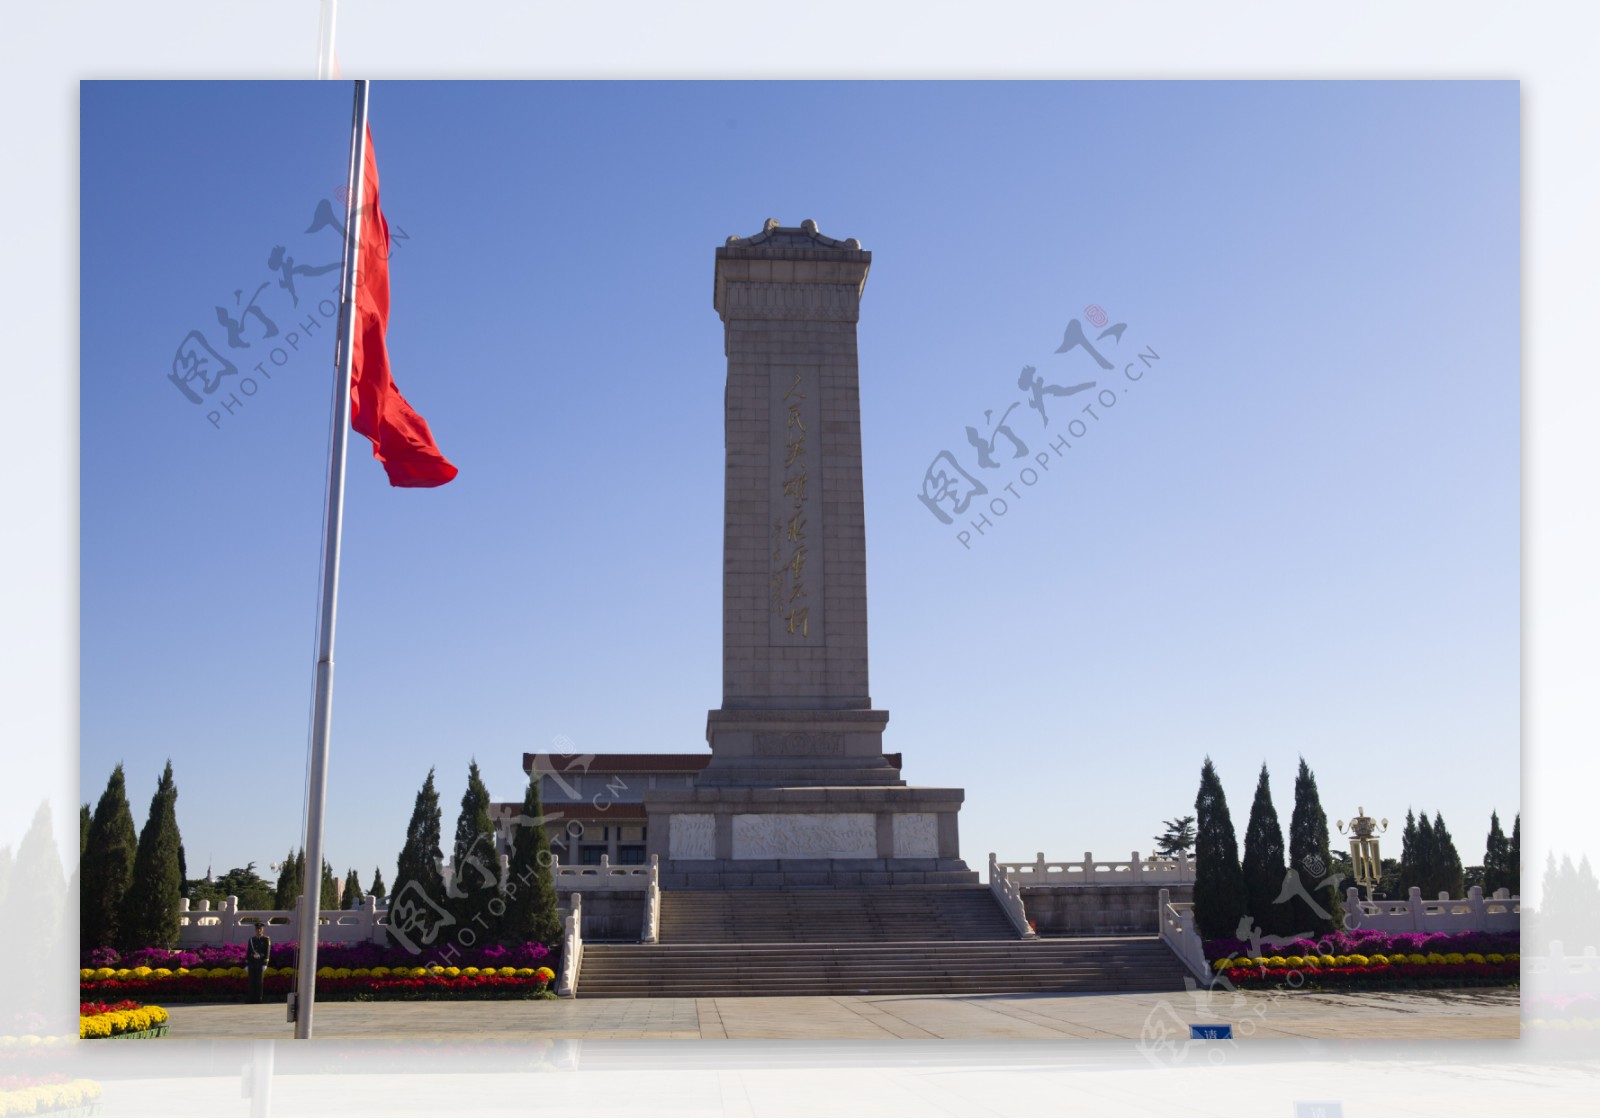 北京人民英雄纪念碑攻略,北京人民英雄纪念碑门票/游玩攻略/地址/图片/门票价格【携程攻略】